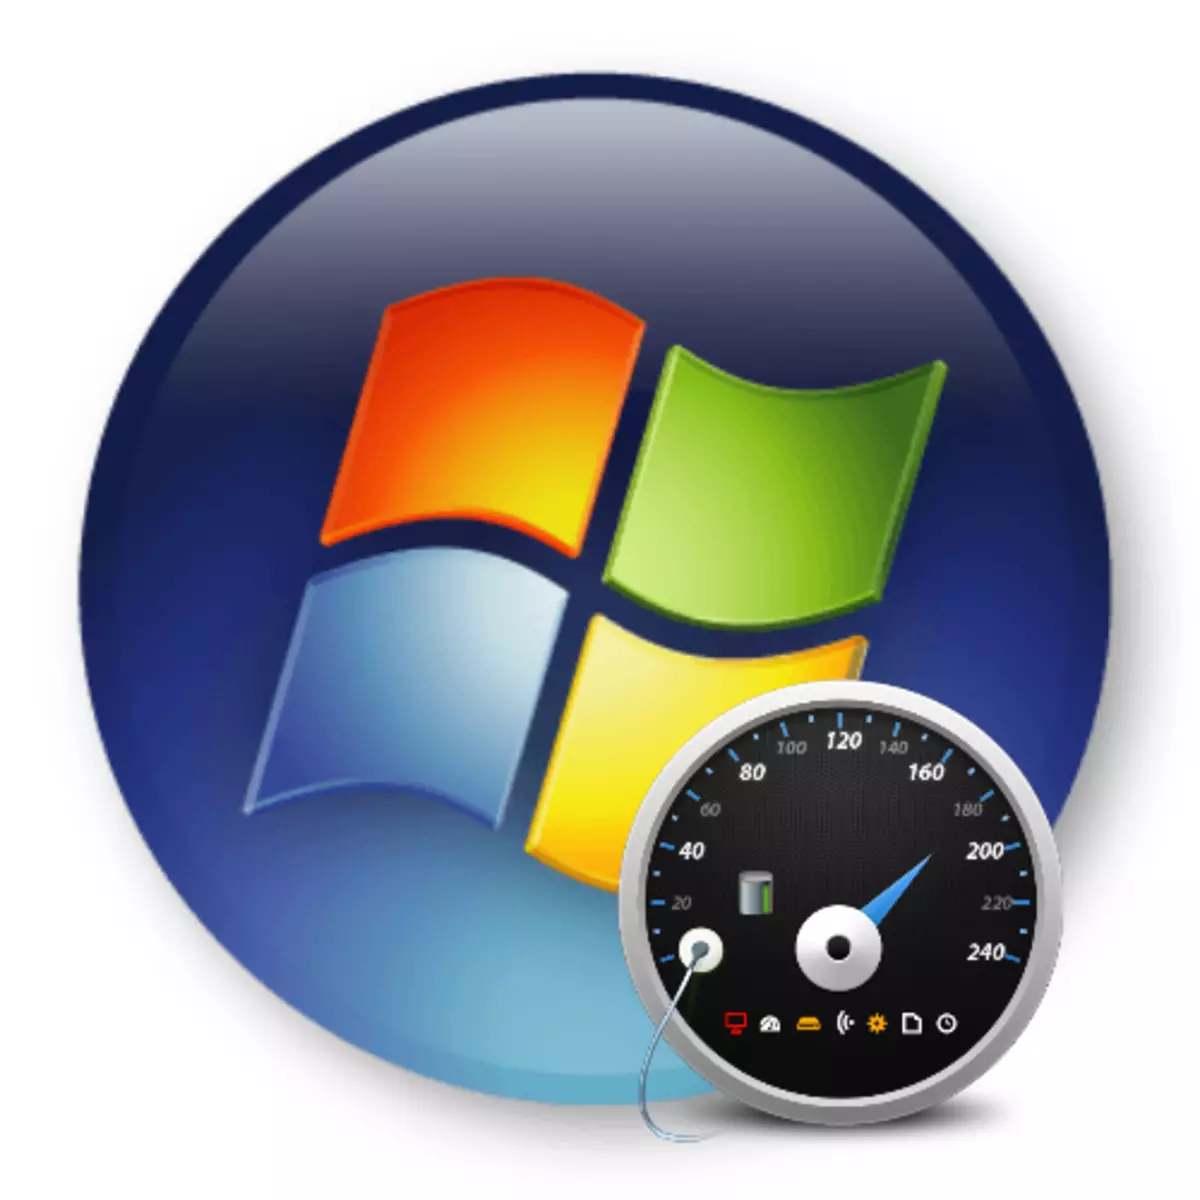 Windows 7деги аткарууну баалоо